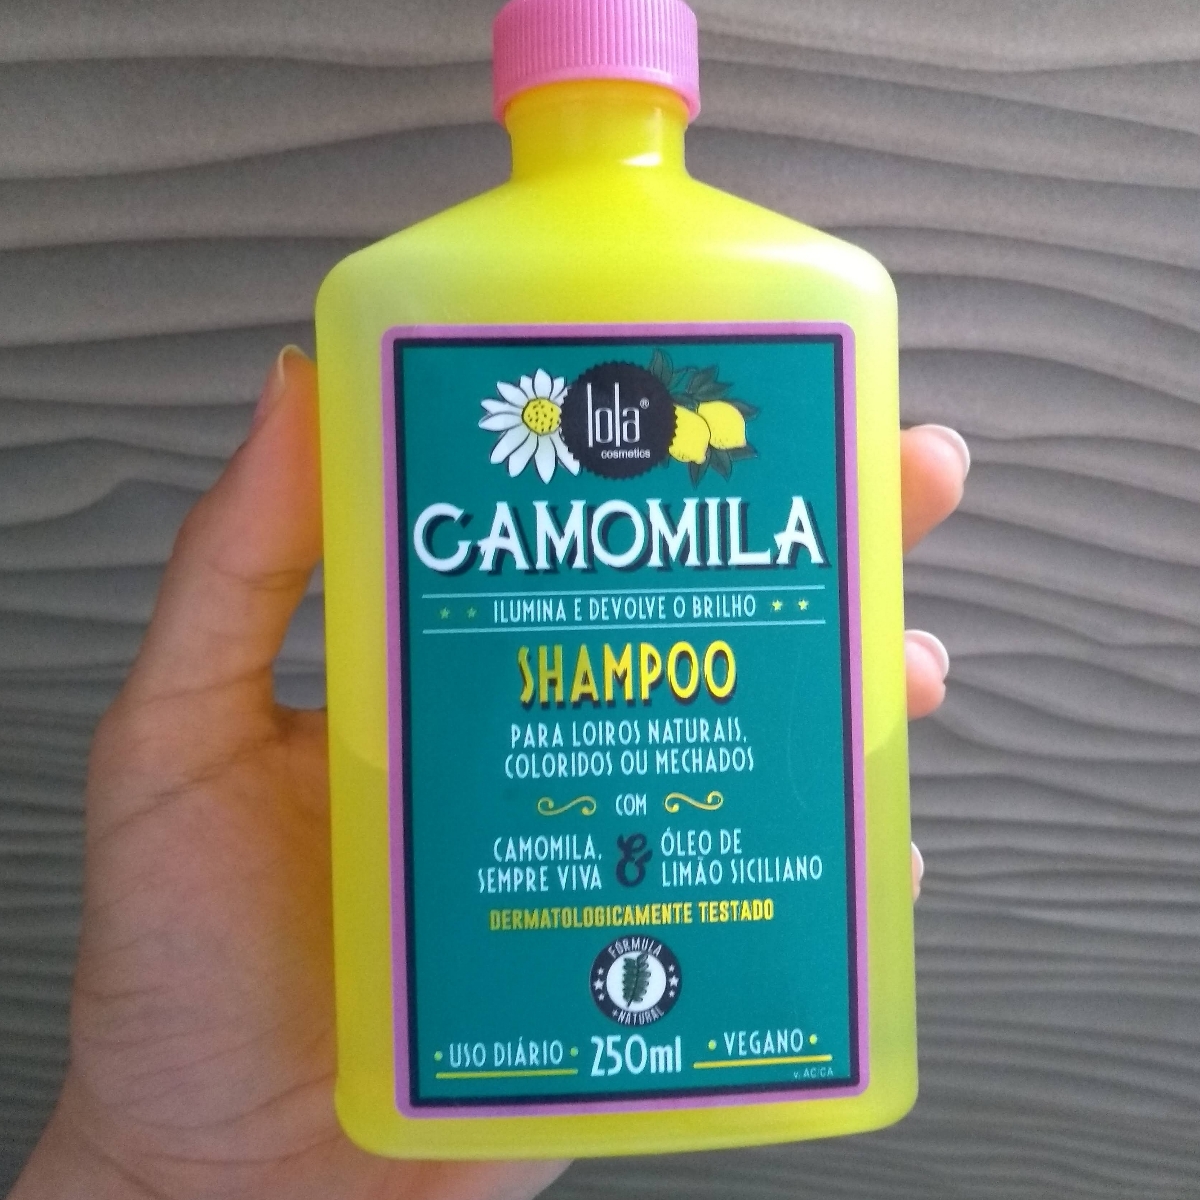 Lola Cosmetics Camomila Shampoo Review | abillion